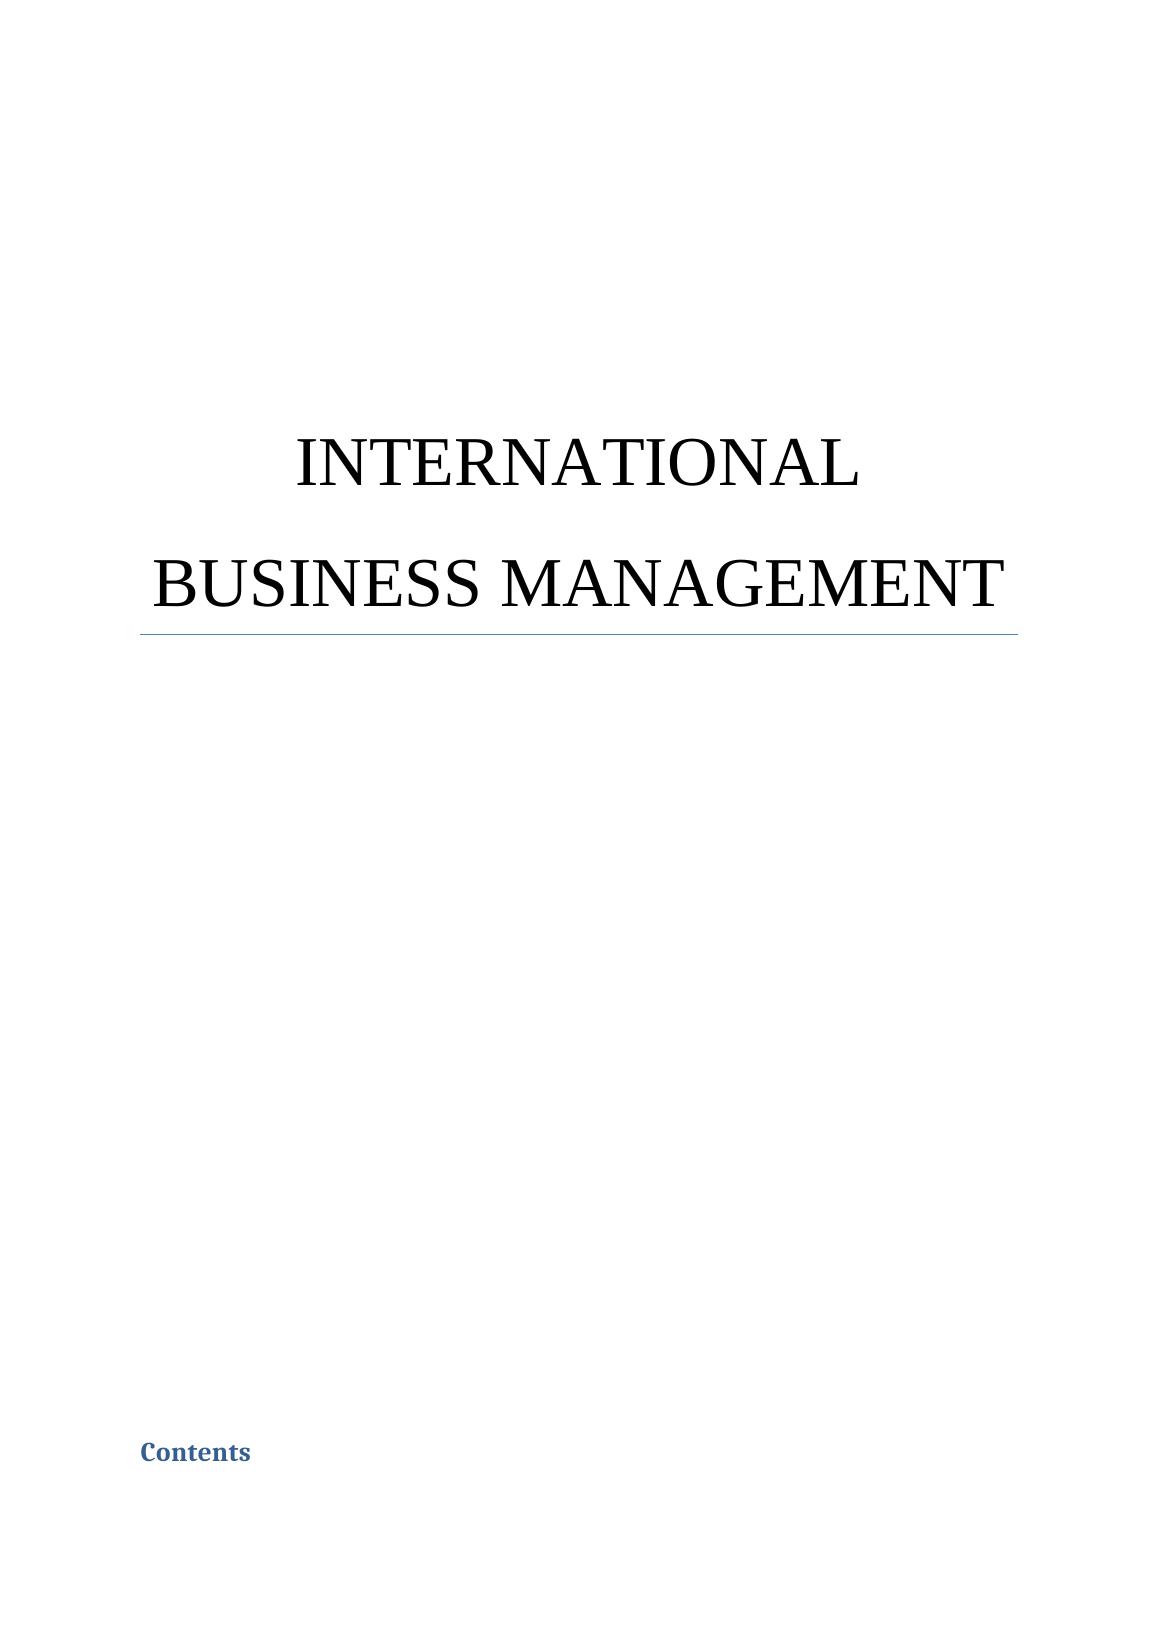 International Business Management Assessment 2022_1